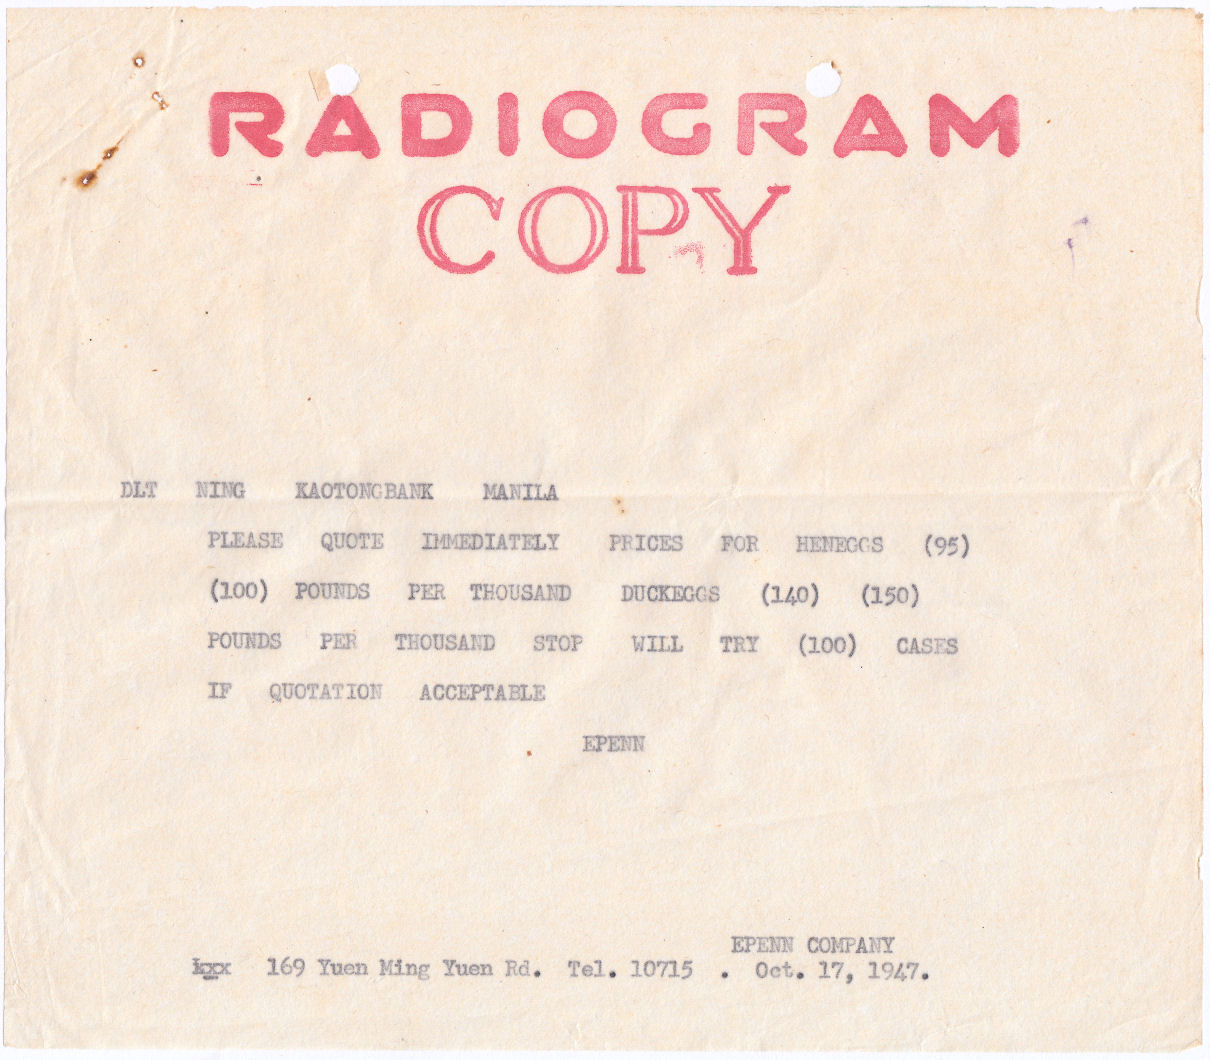 Radiogram copy Via RCA 17-10-47